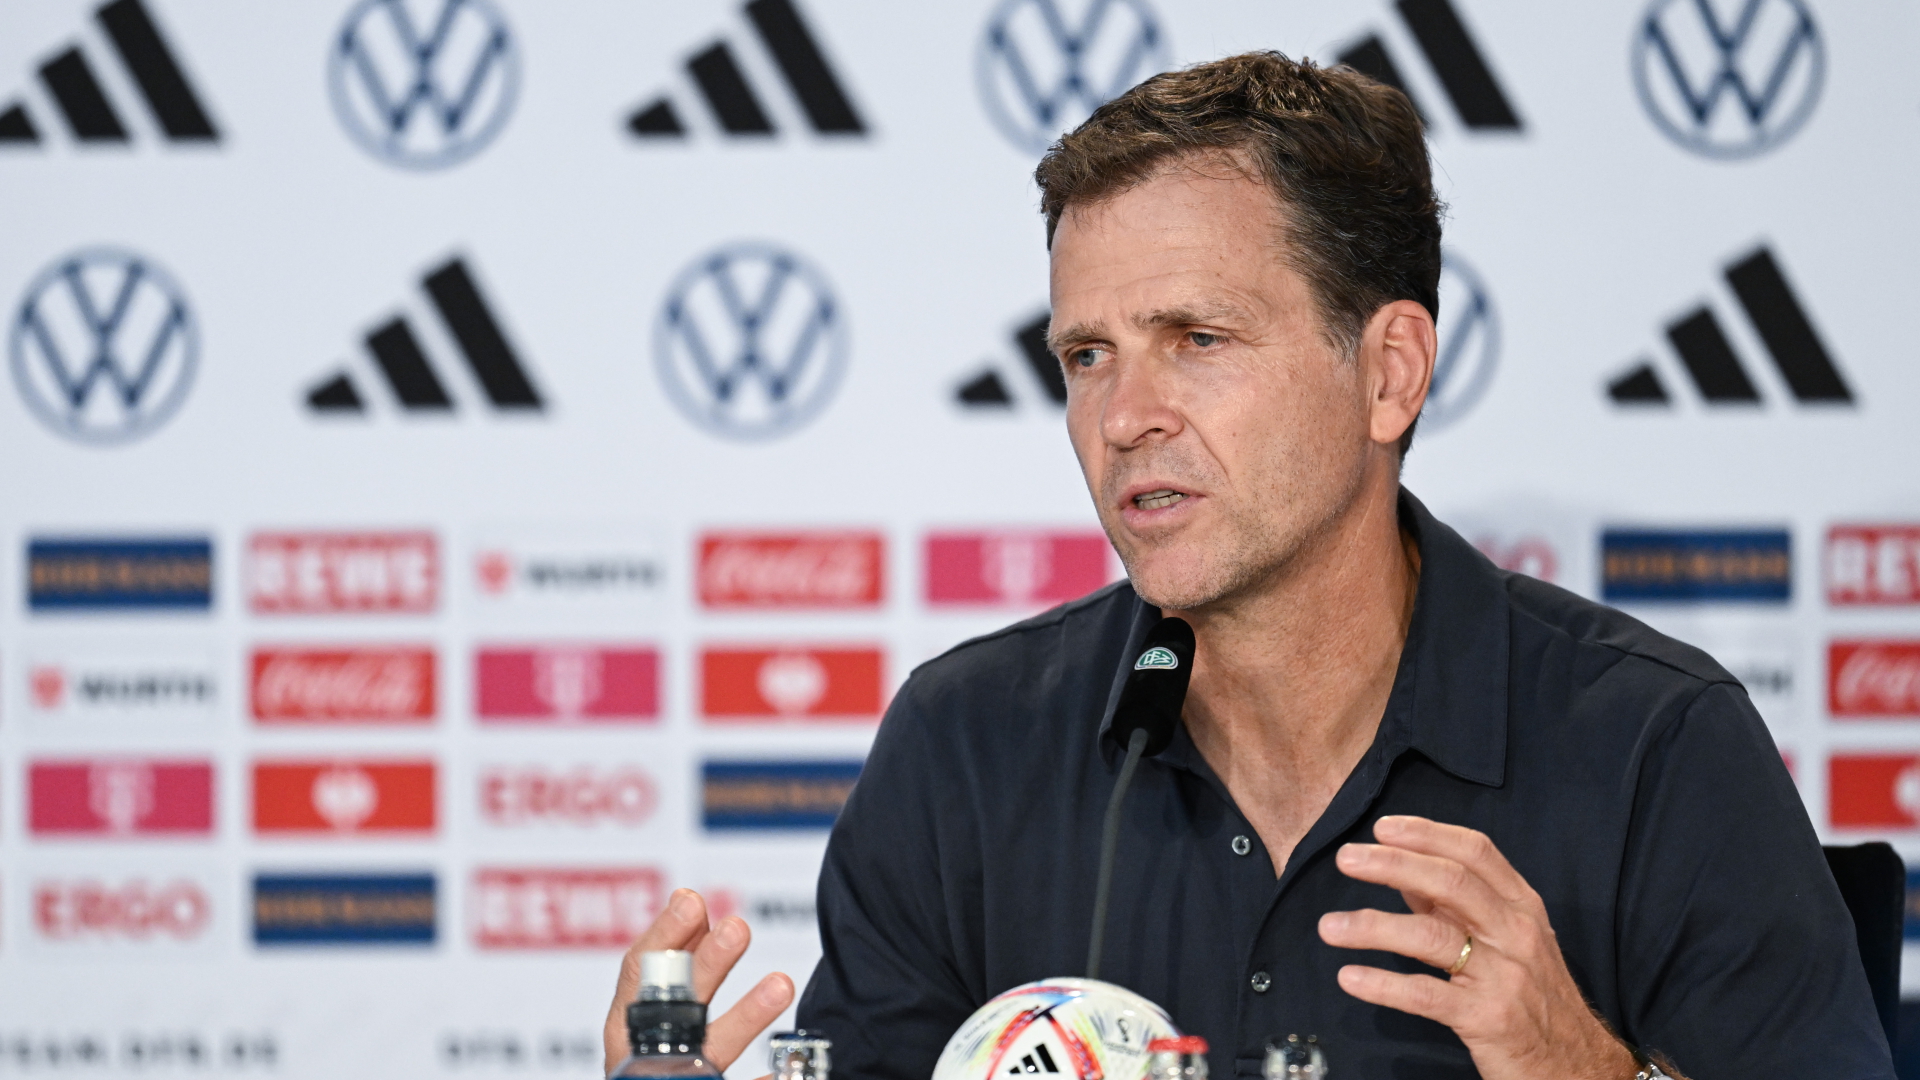 Bierhoff löst nach WM-Debakel Vertrag mit dem DFB auf